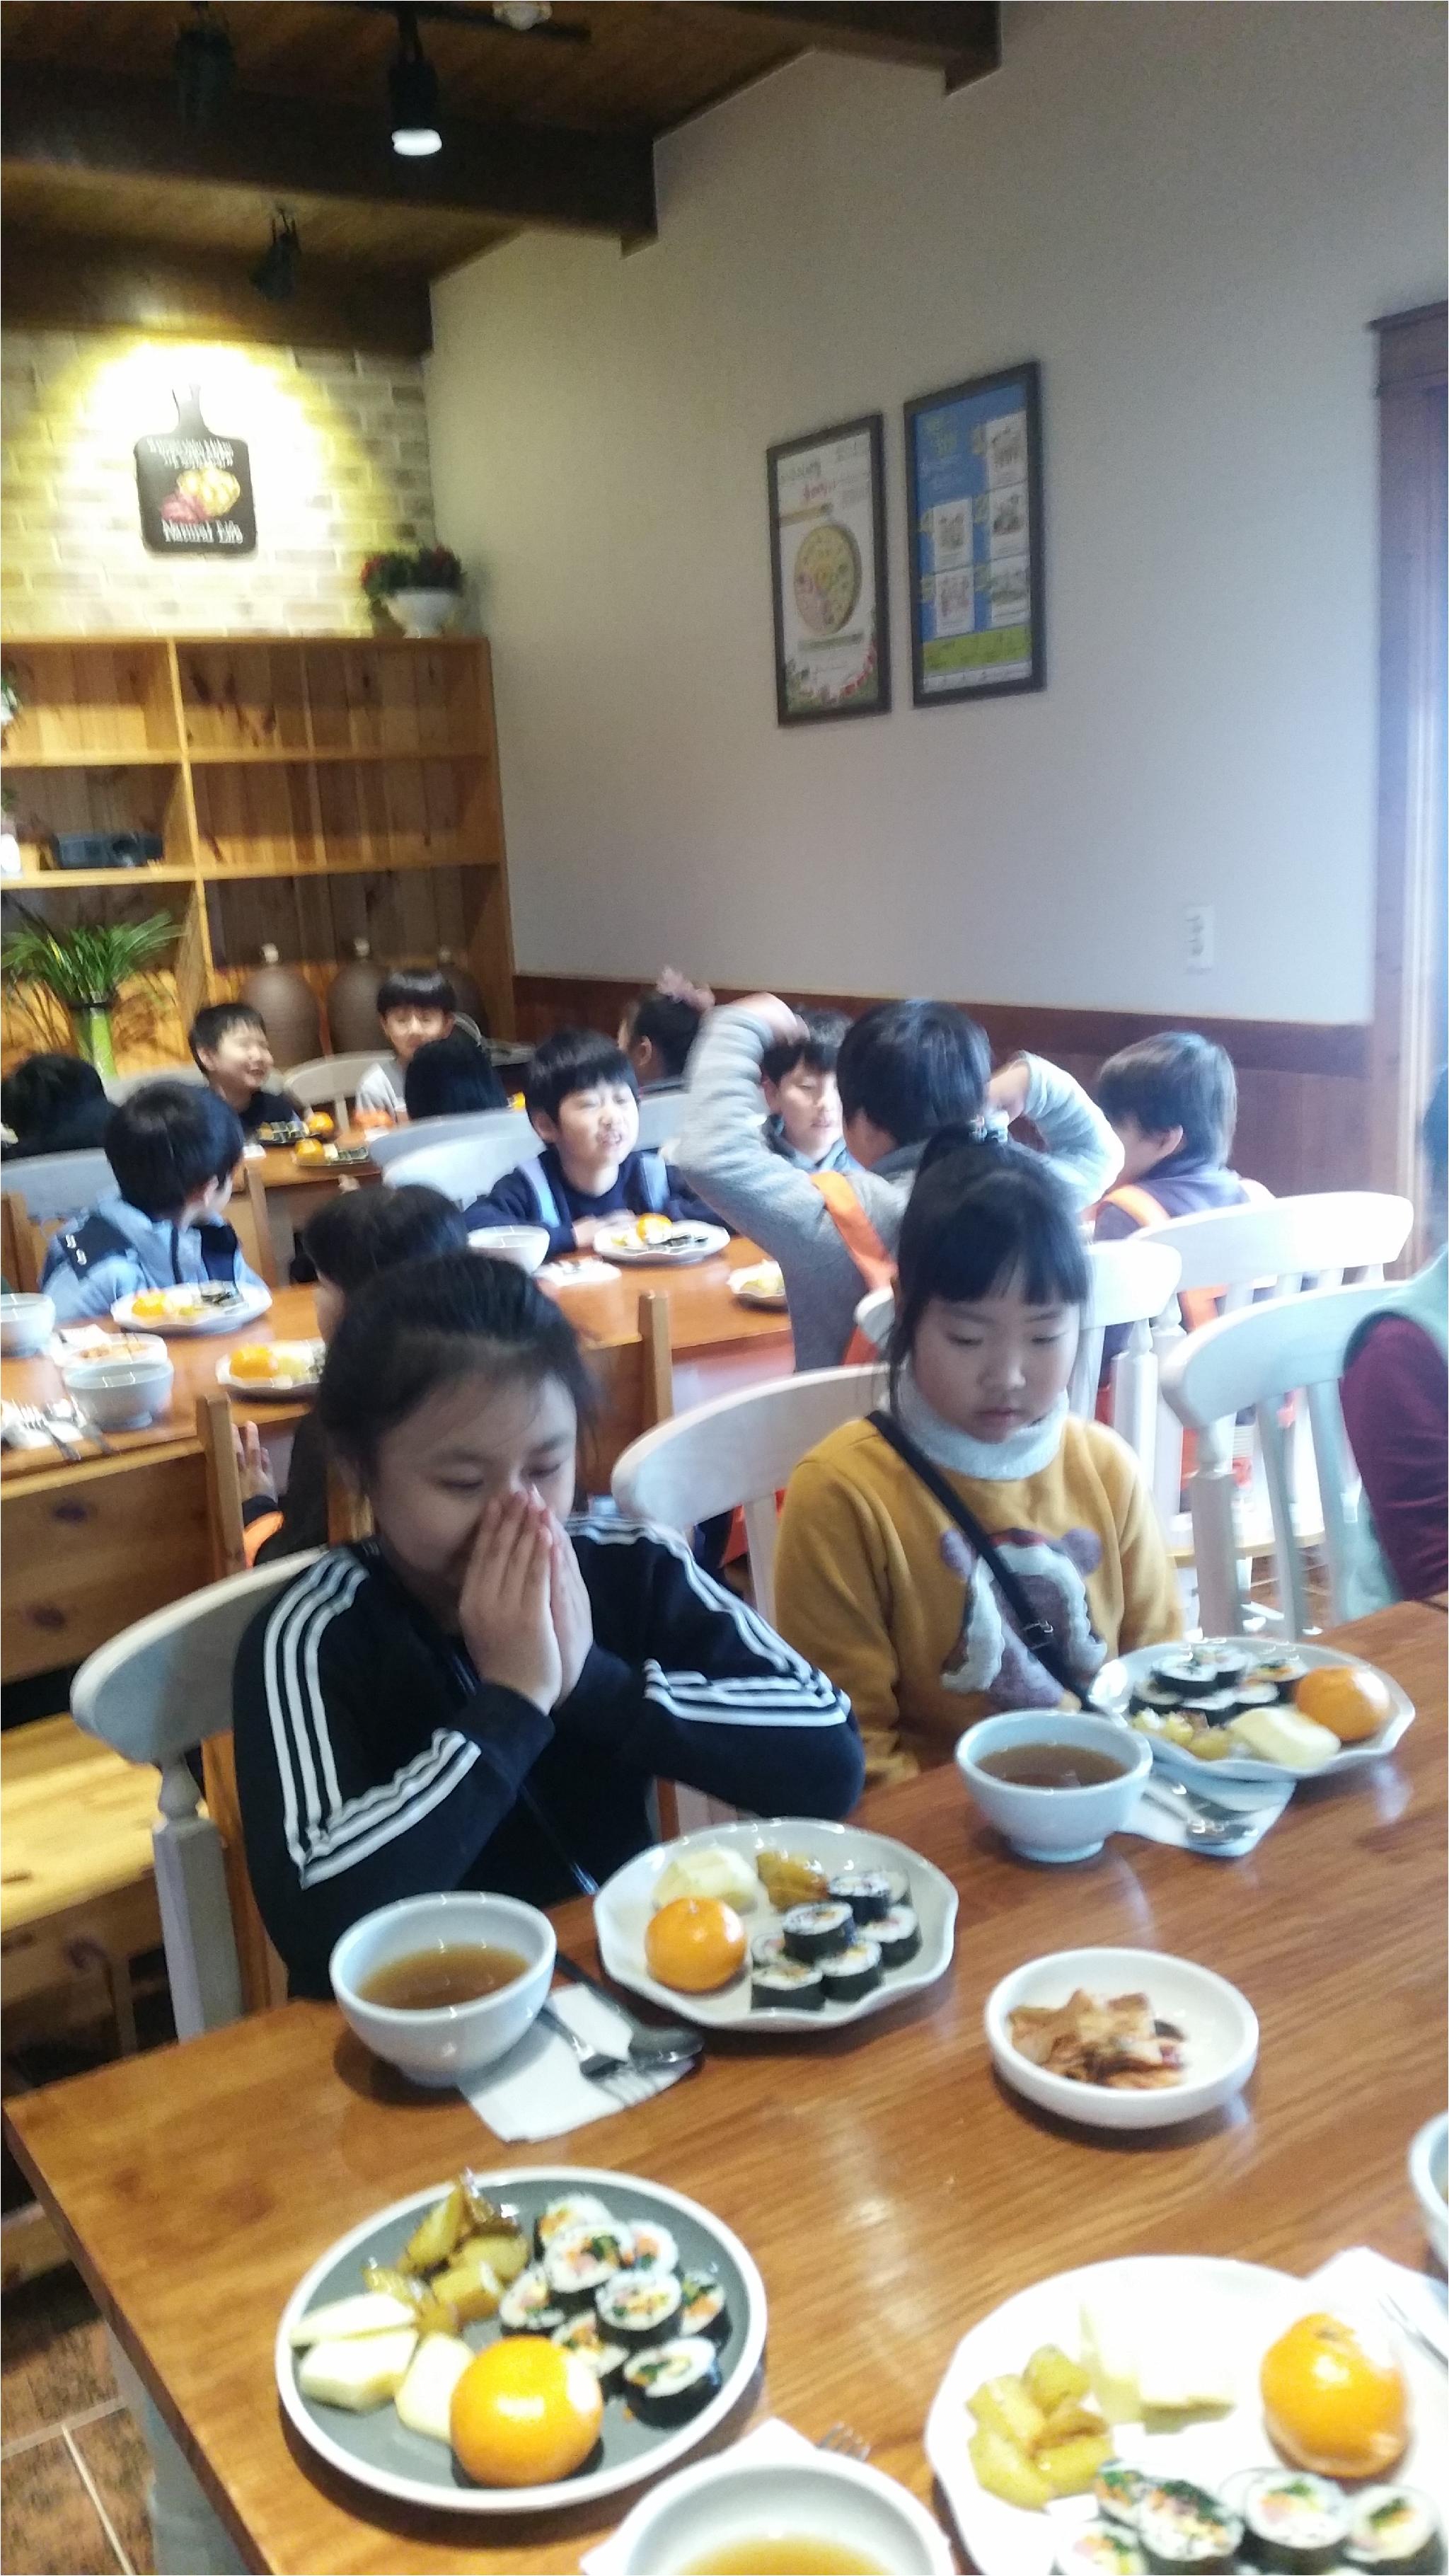 맛있는 점심식사. 김밥 부페 ,3번씩 먹은 아이도 많아요.